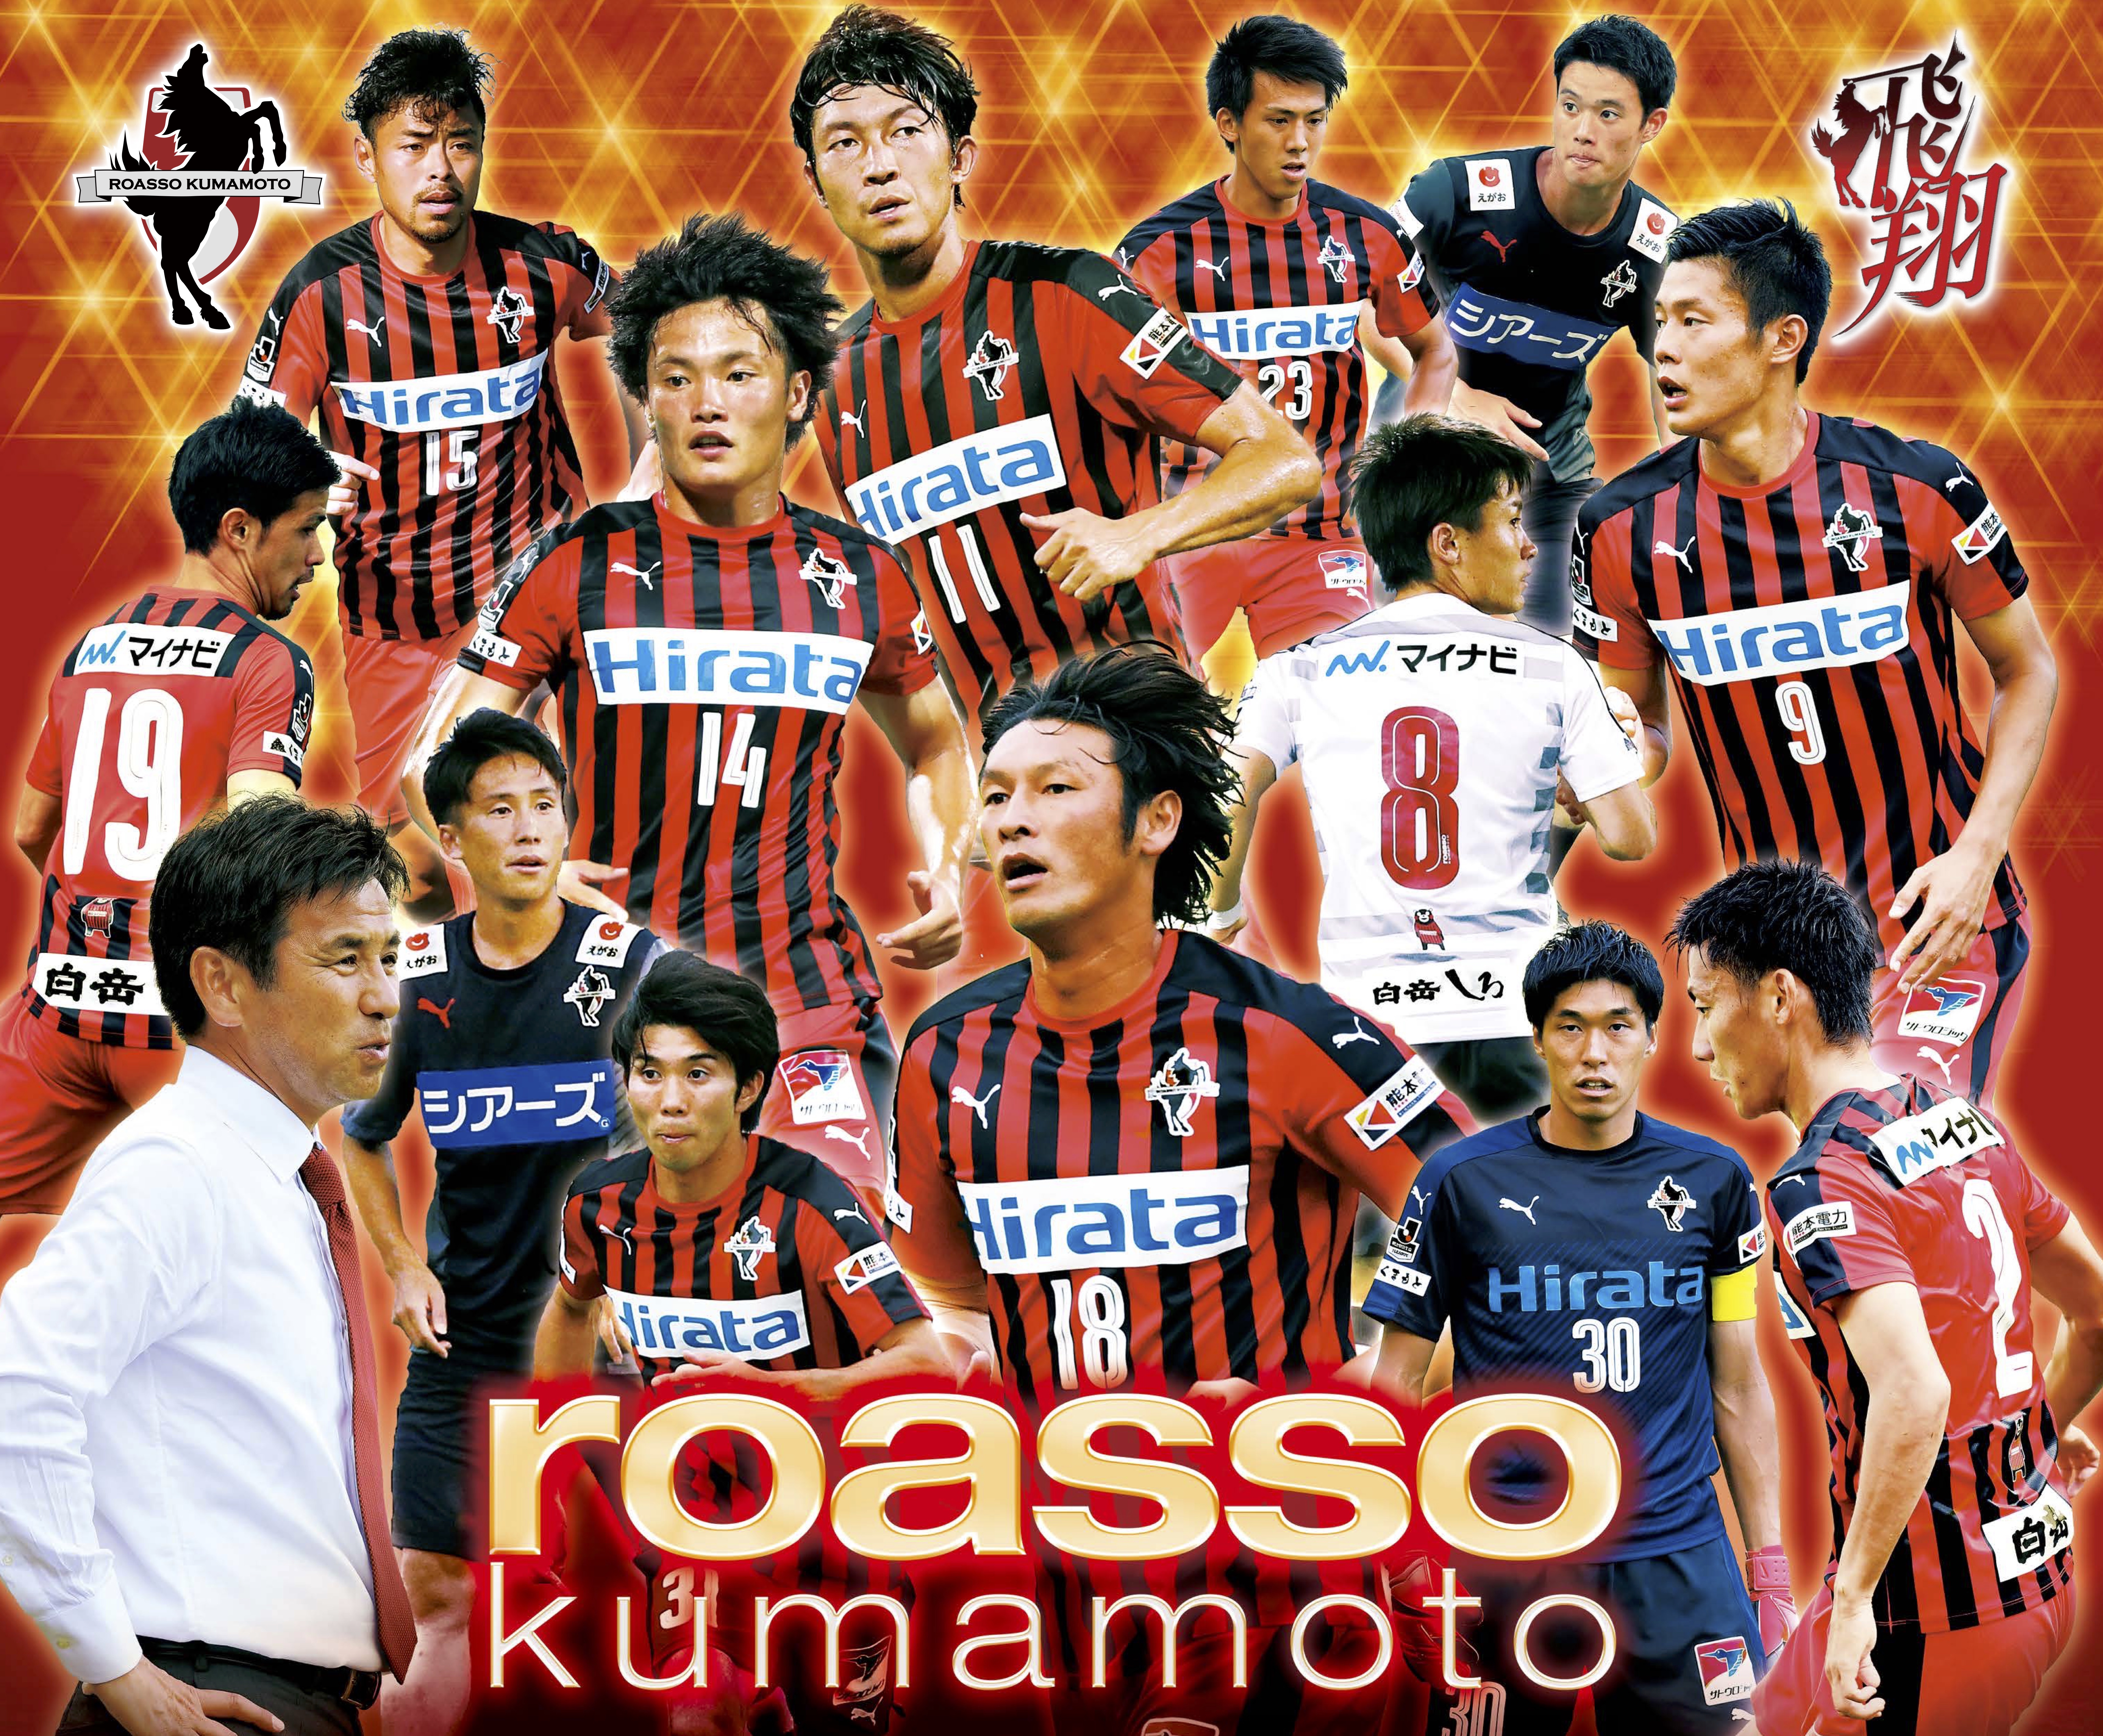 スターティアホールディングス プロサッカークラブ ロアッソ熊本 と10月からサポートカンパニー契約を締結 News